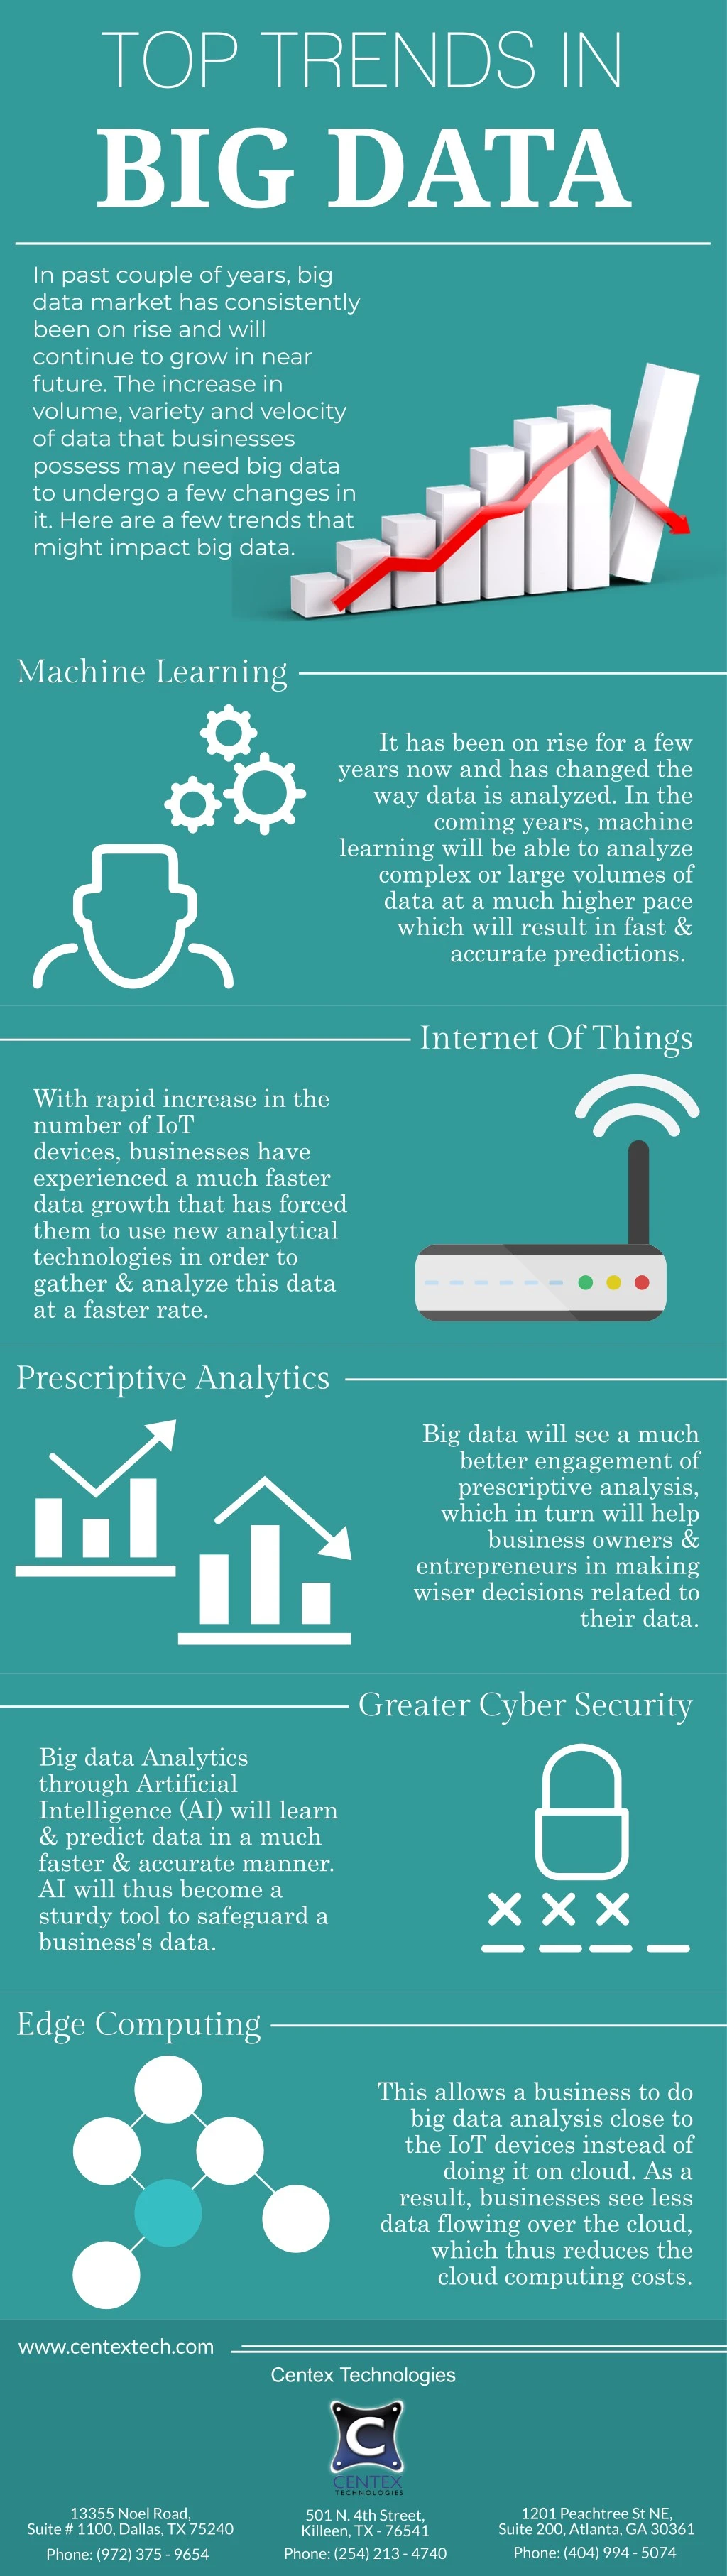 top trends in big data